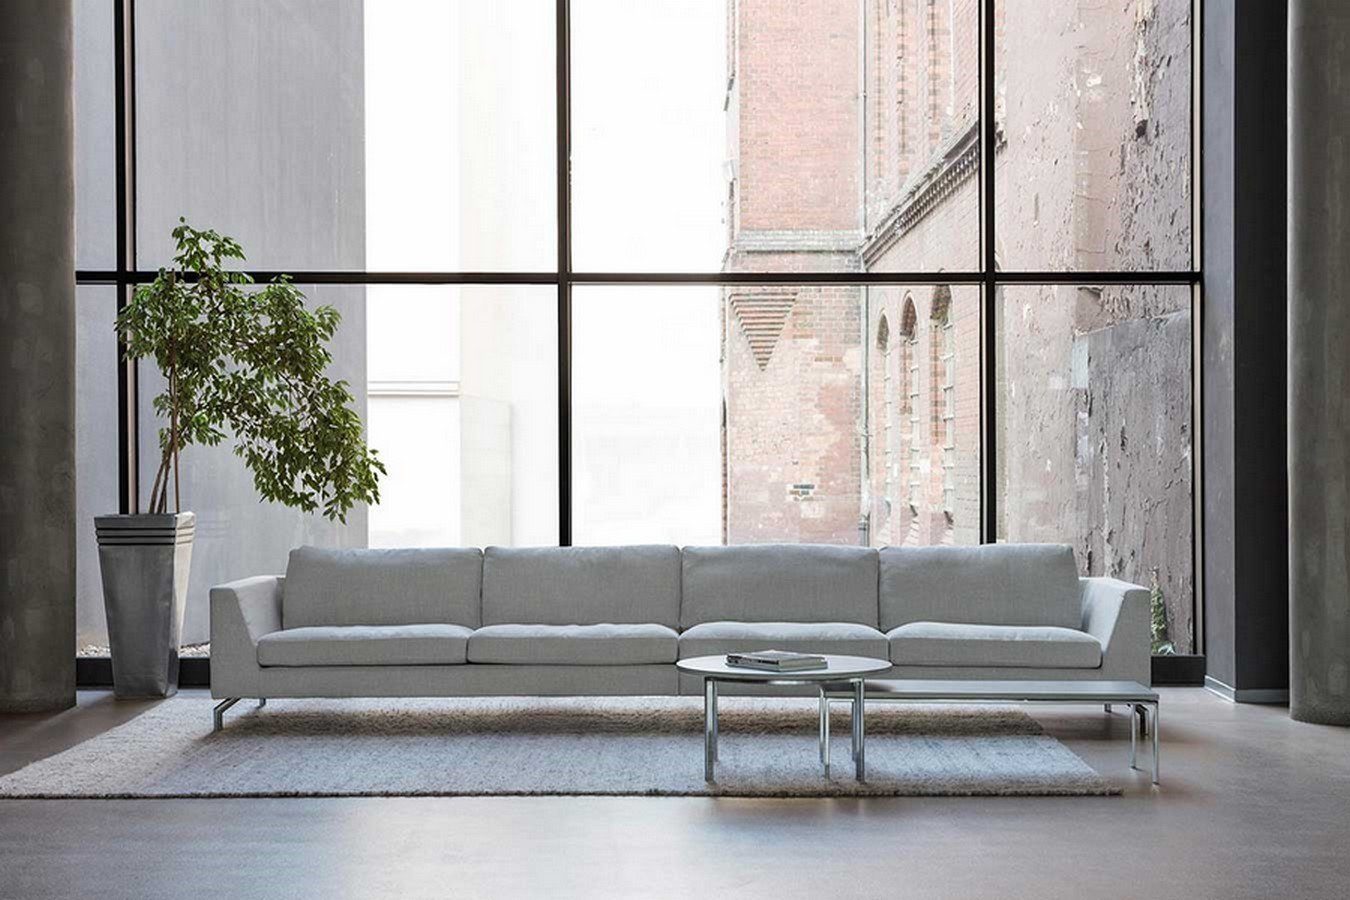 Stoff living Oslo Sitzer daslagerhaus Big-Sofa Sofa orange 3,5 Premium